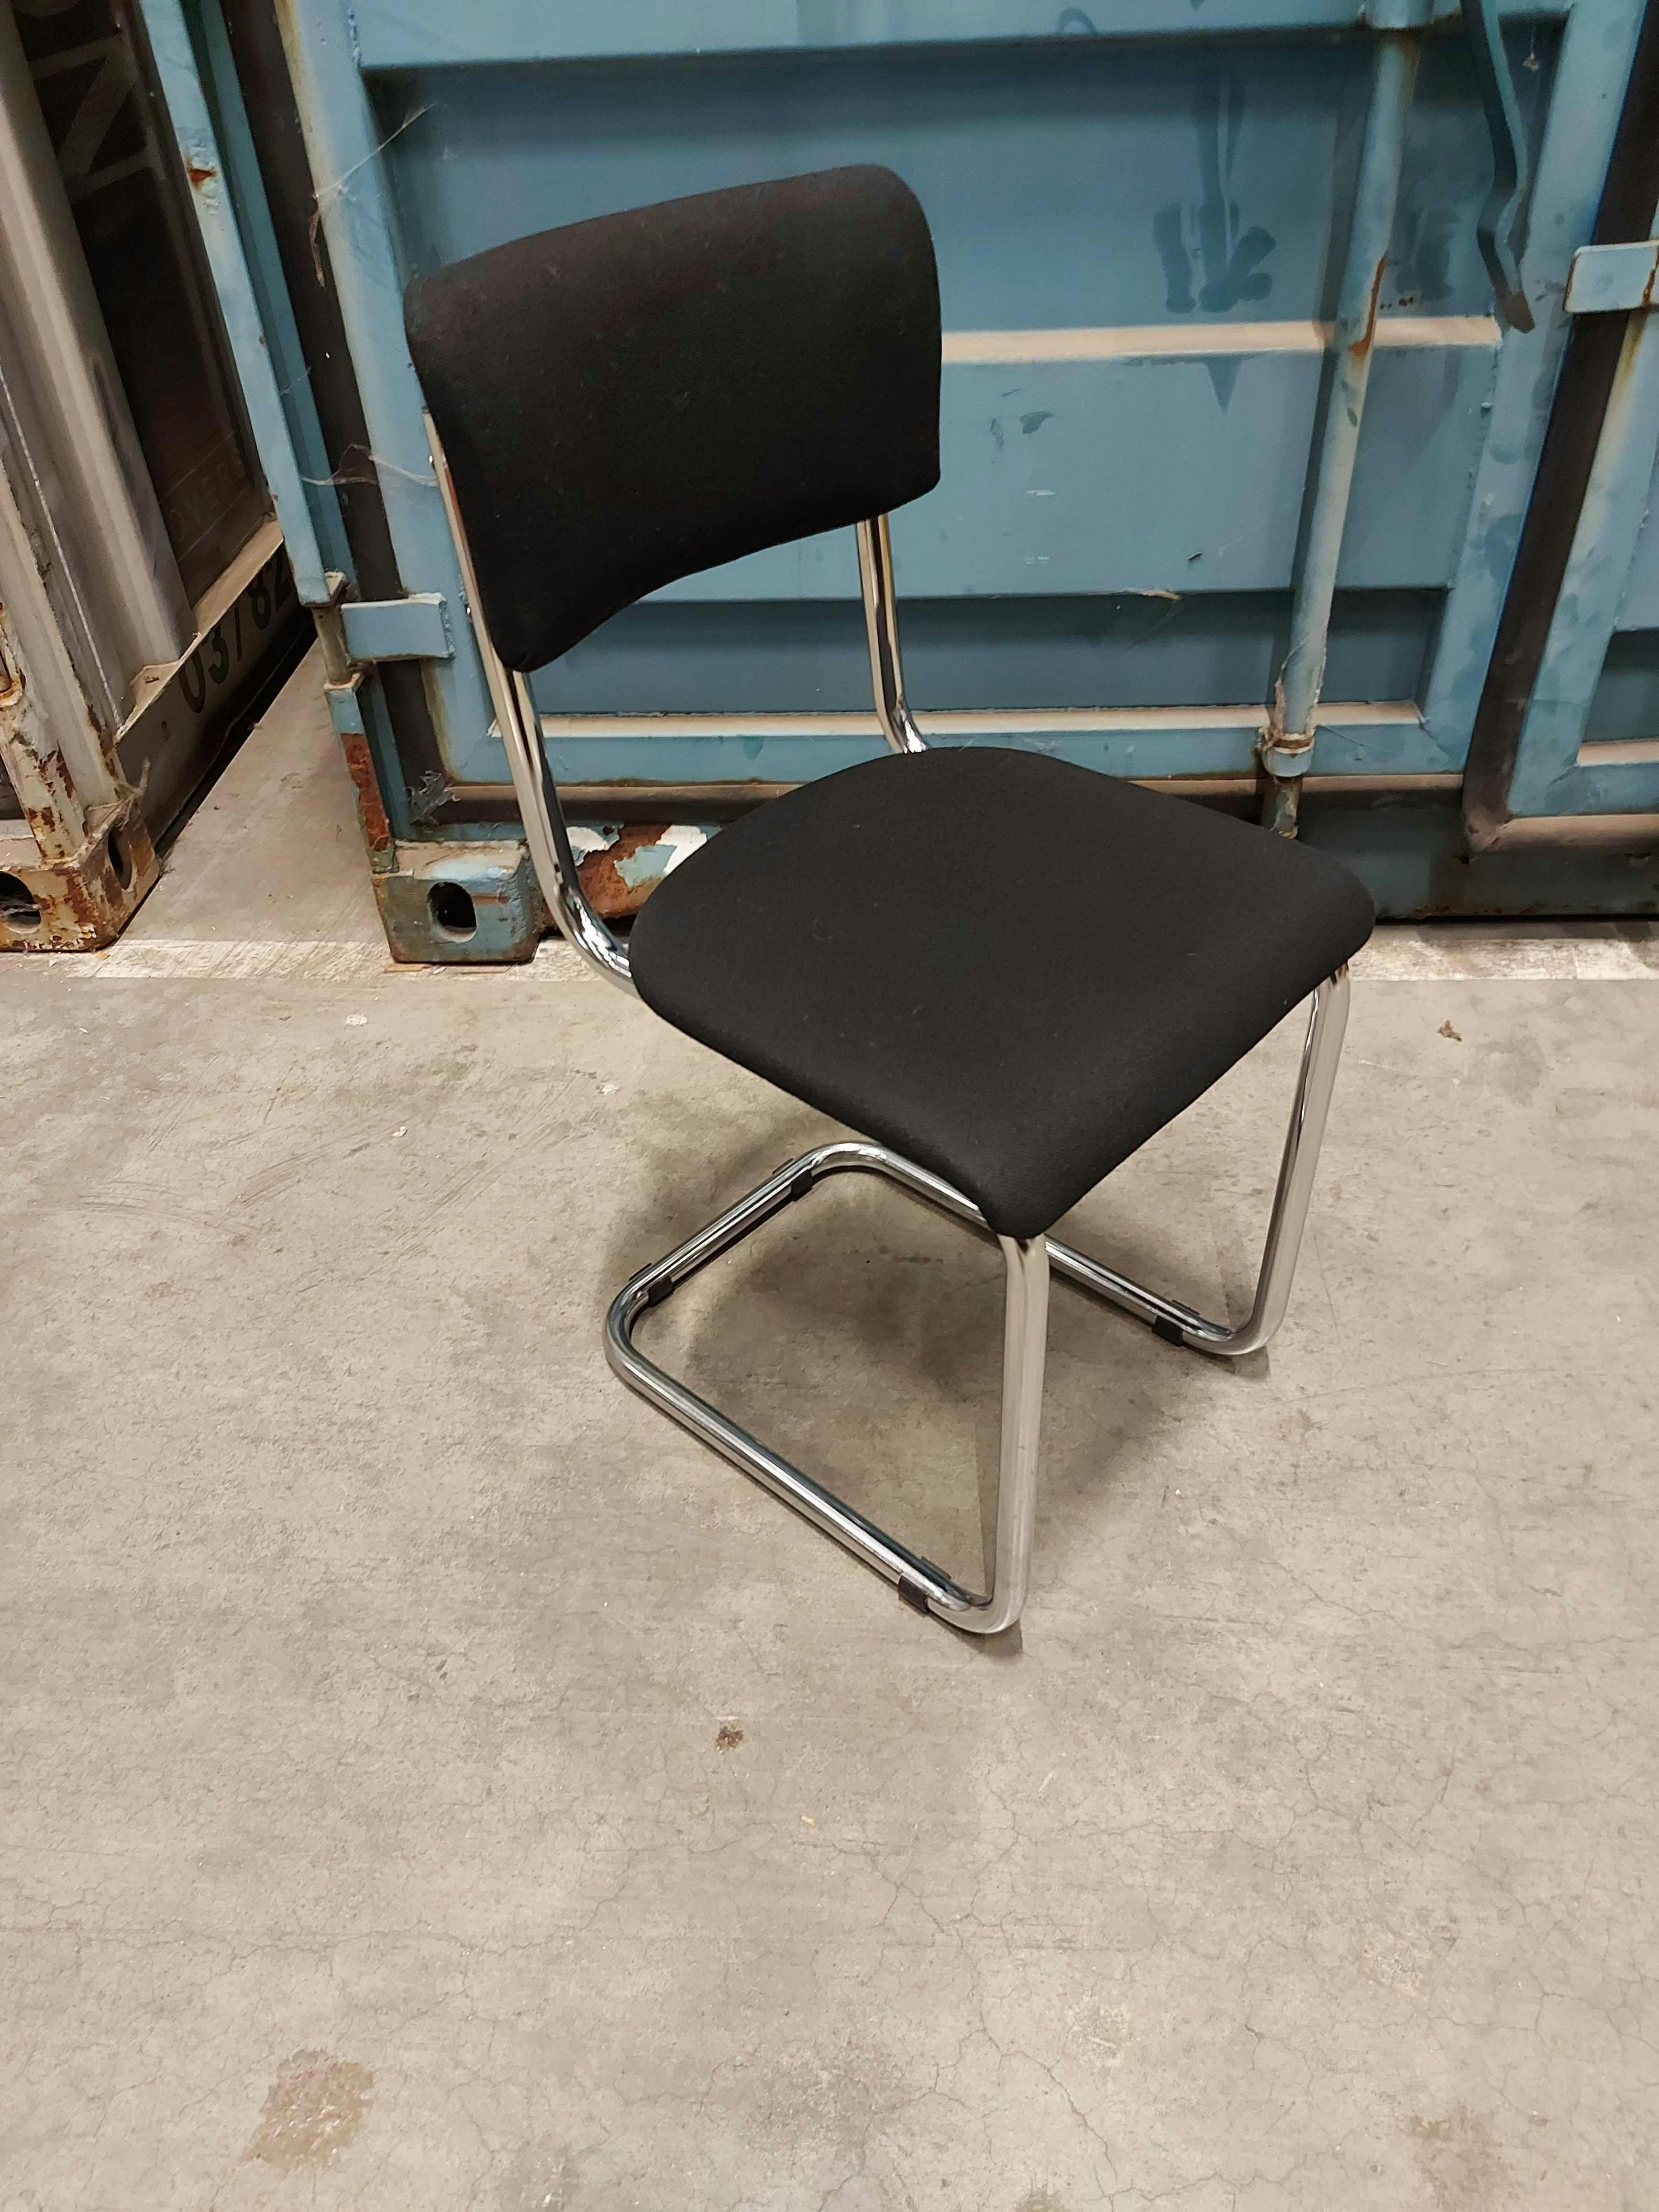 Chaise Vintage noir pieds en alu / Zwarte vintage stoel met aluminium poten - Qualité de seconde main "Chaises" - Relieve Furniture - 1